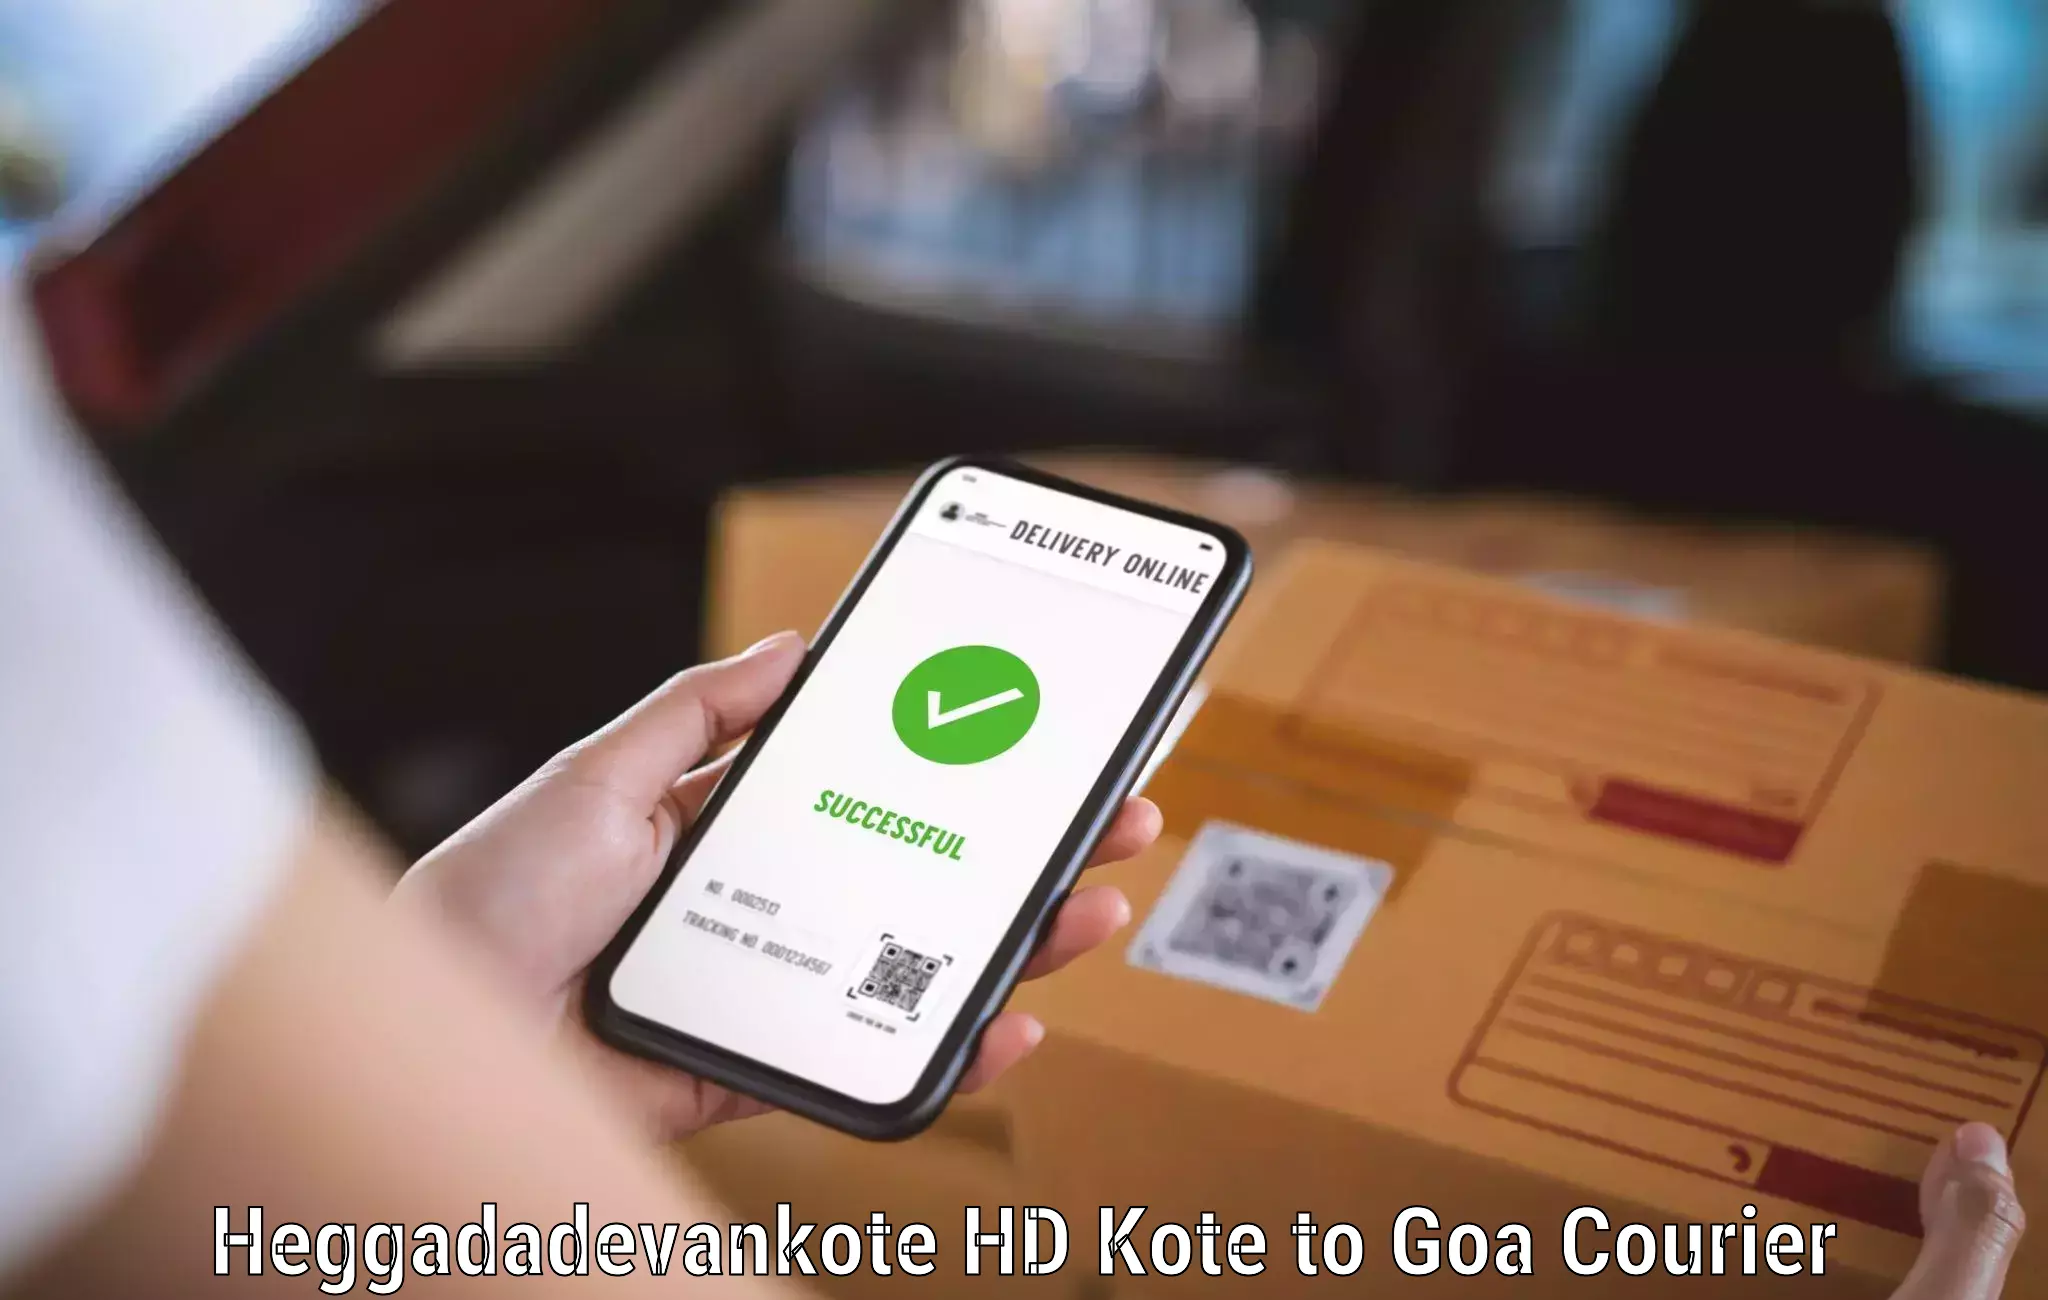 Smart shipping technology Heggadadevankote HD Kote to Panaji